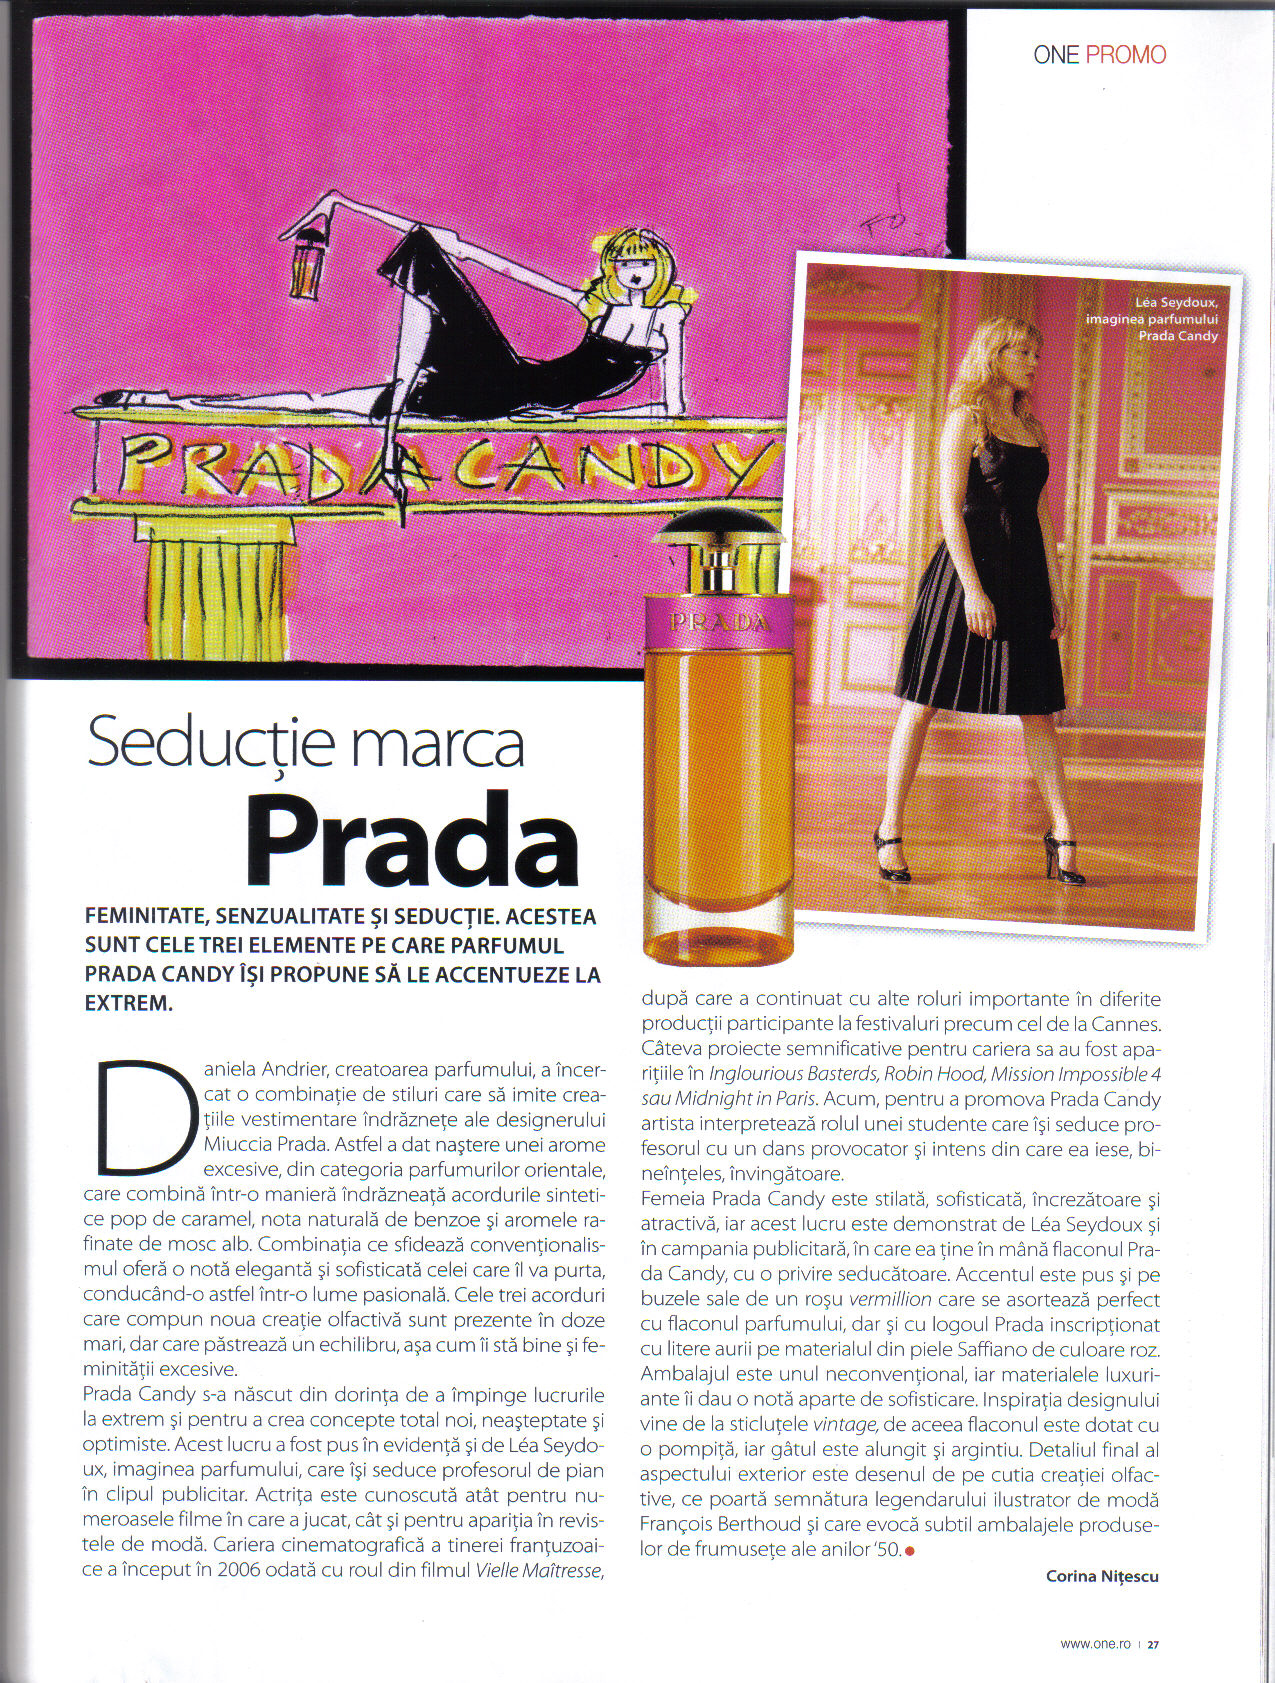 Seducţie marca Prada - The ONE